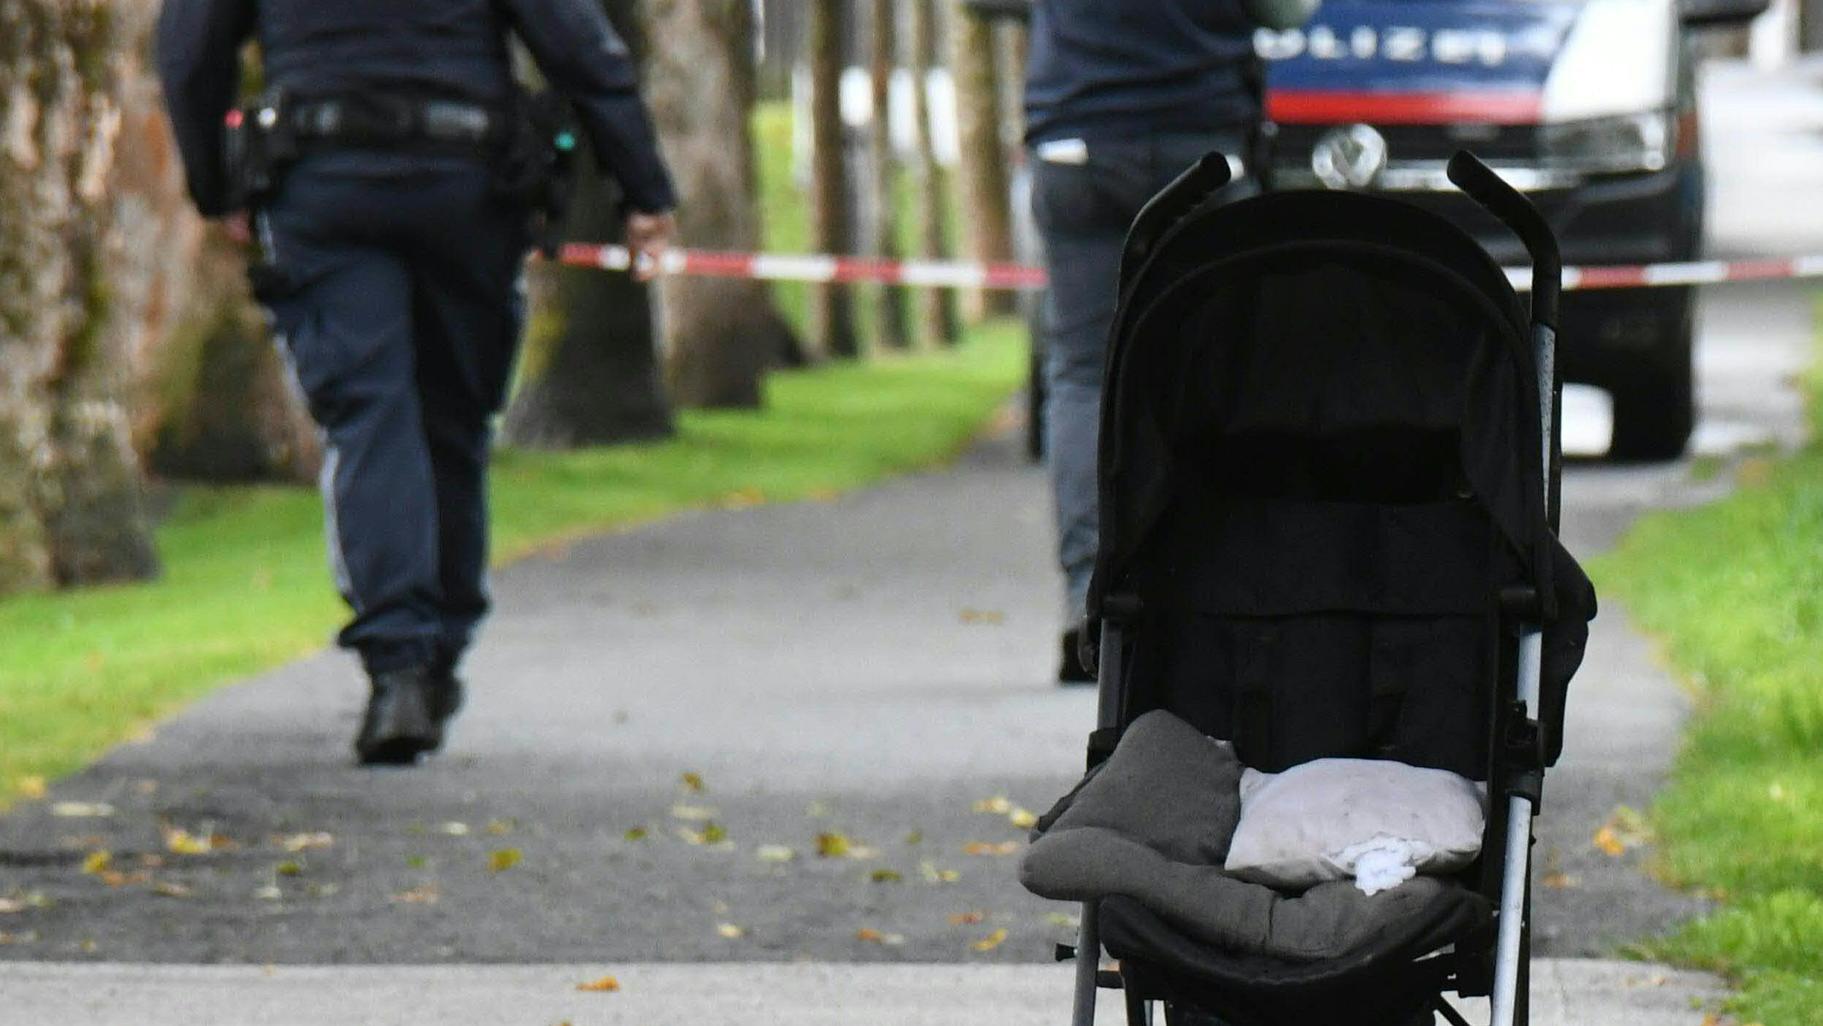 Sankt Johann in Tirol: In diesem Kinderwagen saß der Junge laut Polizei als sein Vater von hinten bewusstlos geschlagen wurde